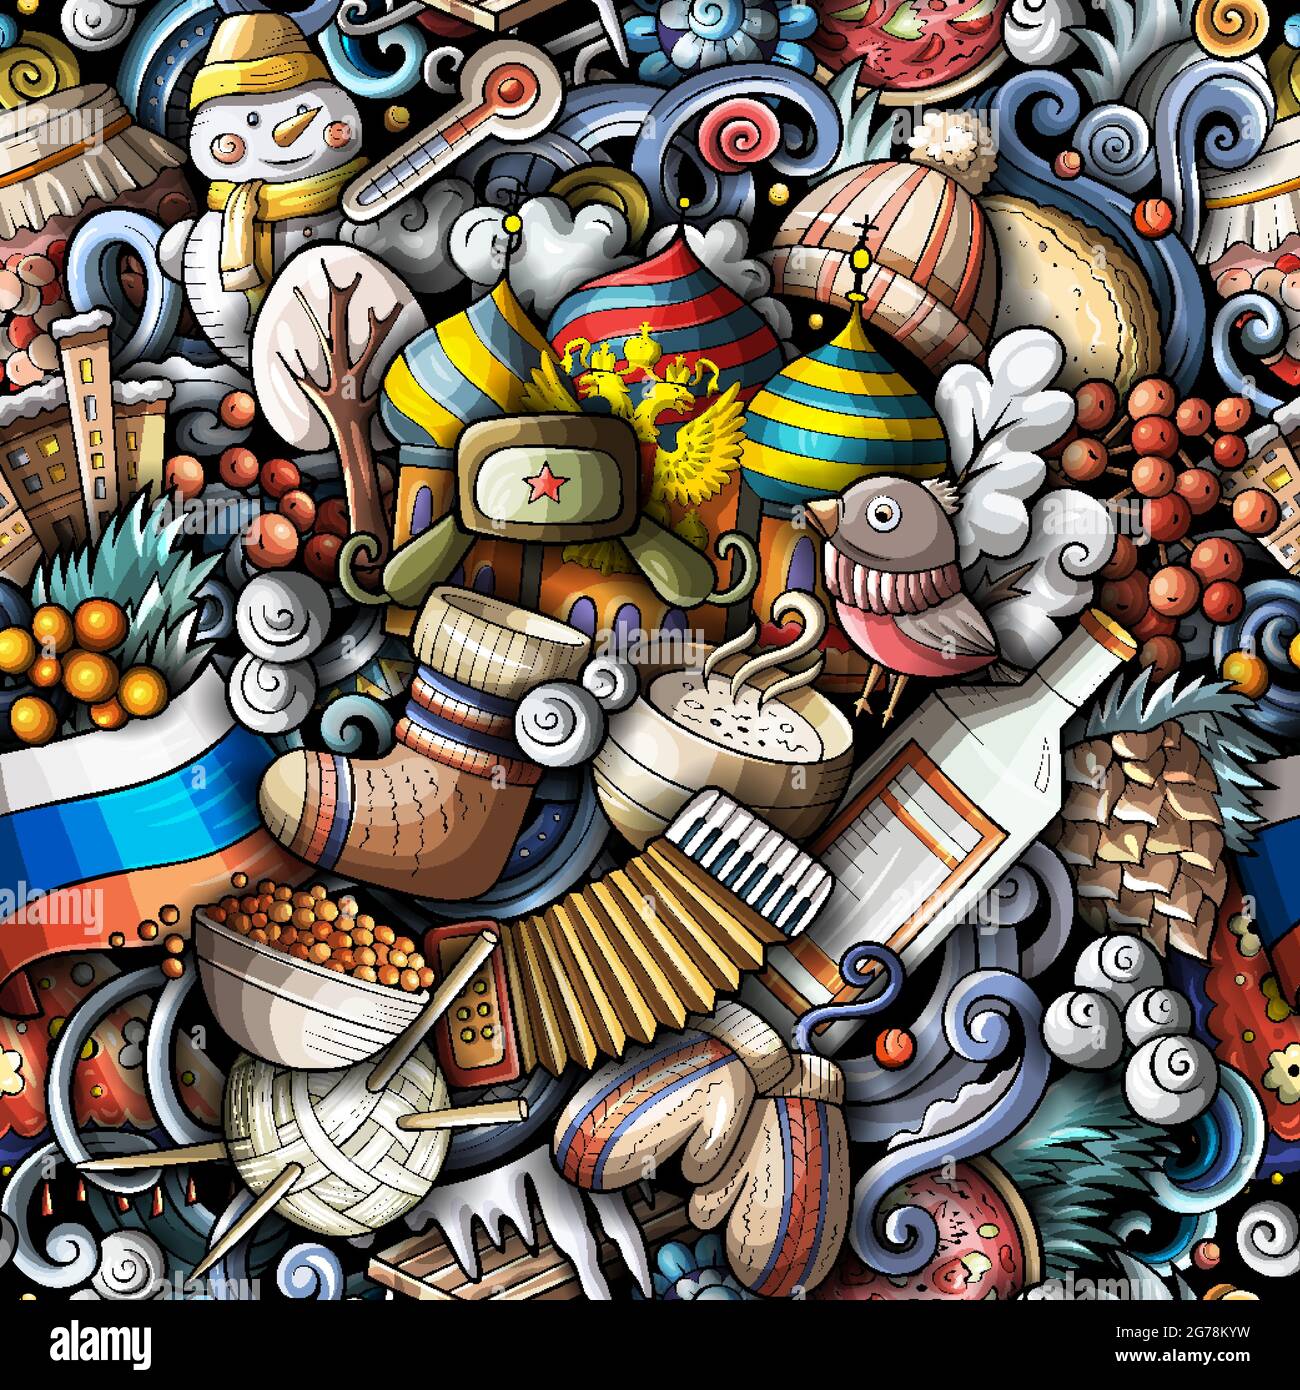 Cartoon kritzelt Russland nahtlose Muster. Hintergrund mit russischen Kultursymbolen und Gegenständen. Farbenfroh, detailreich, mit vielen Objekten im Hintergrund zum Drucken Stock Vektor